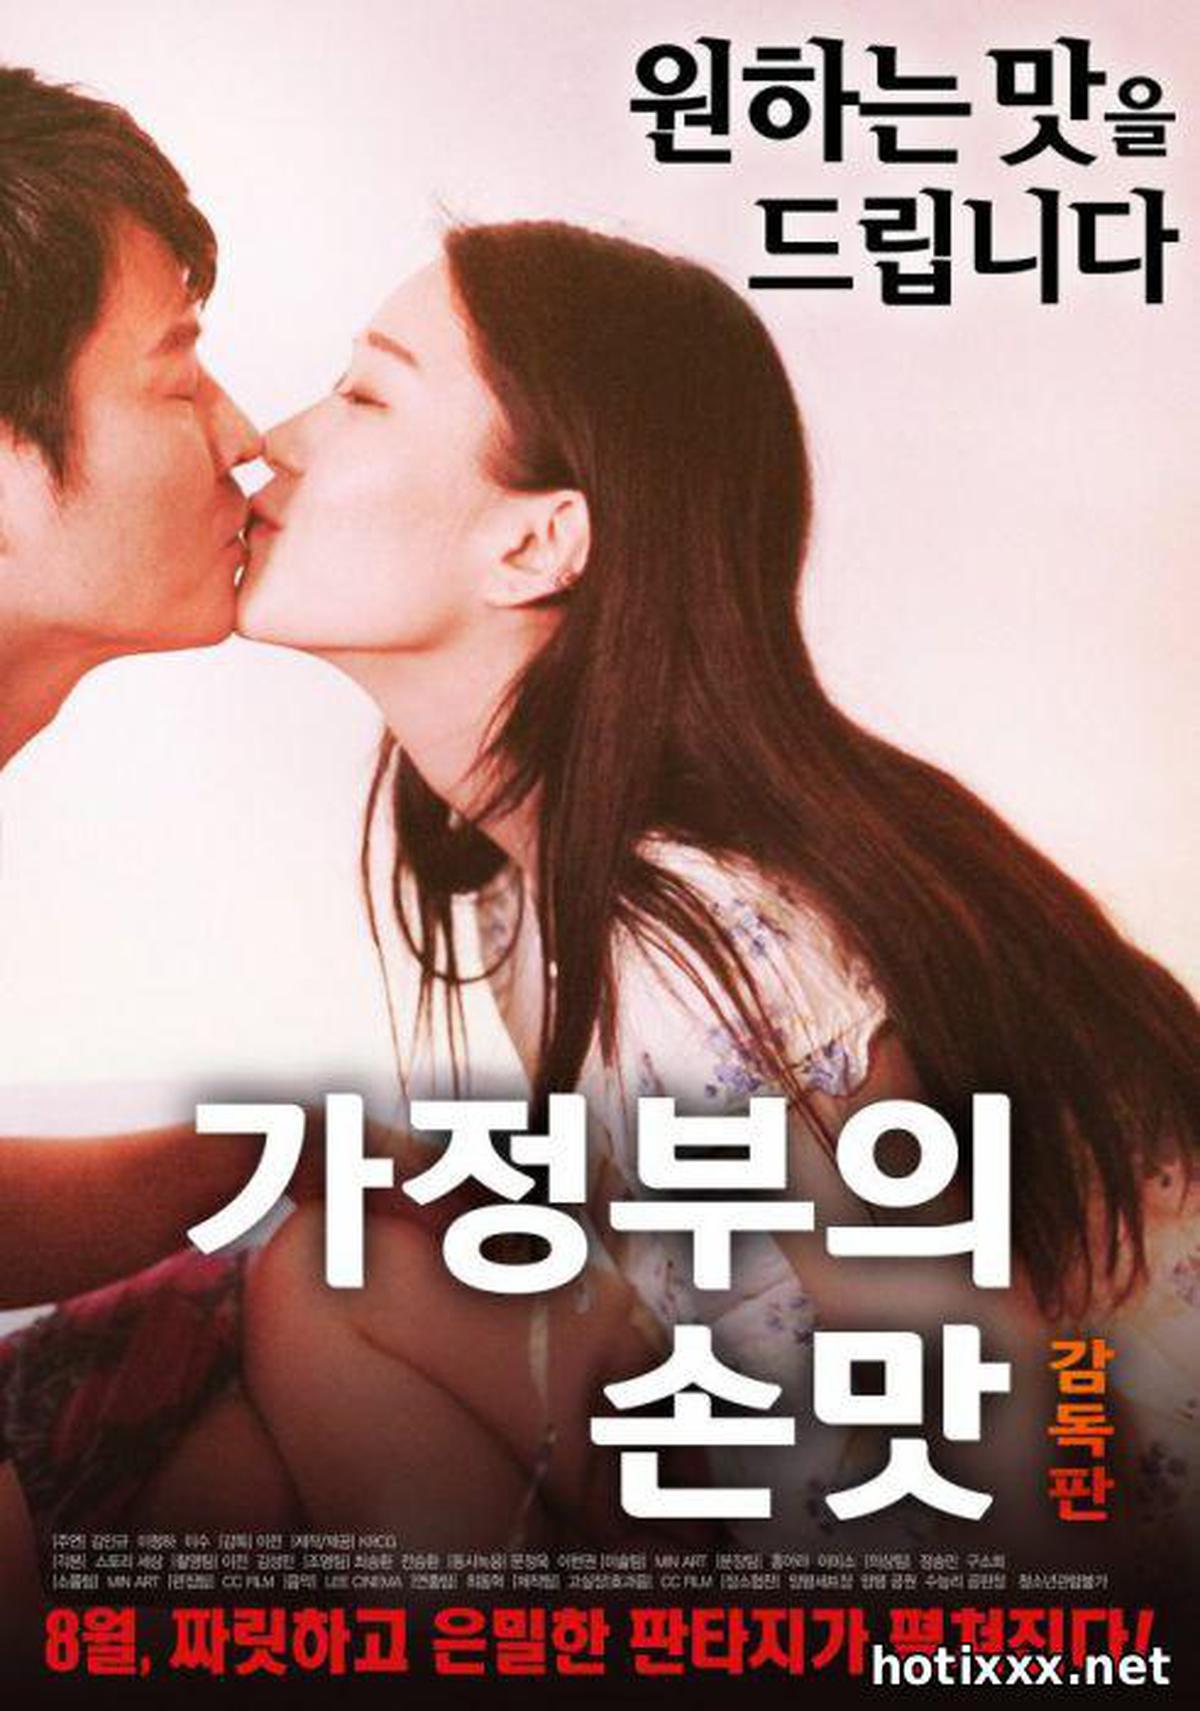 엄마의 손맛 감독판 / ga-jeong-bu-eui son-mat gam-dok-pan / The Maid's Comfort Food – Director’s Cut (2017)